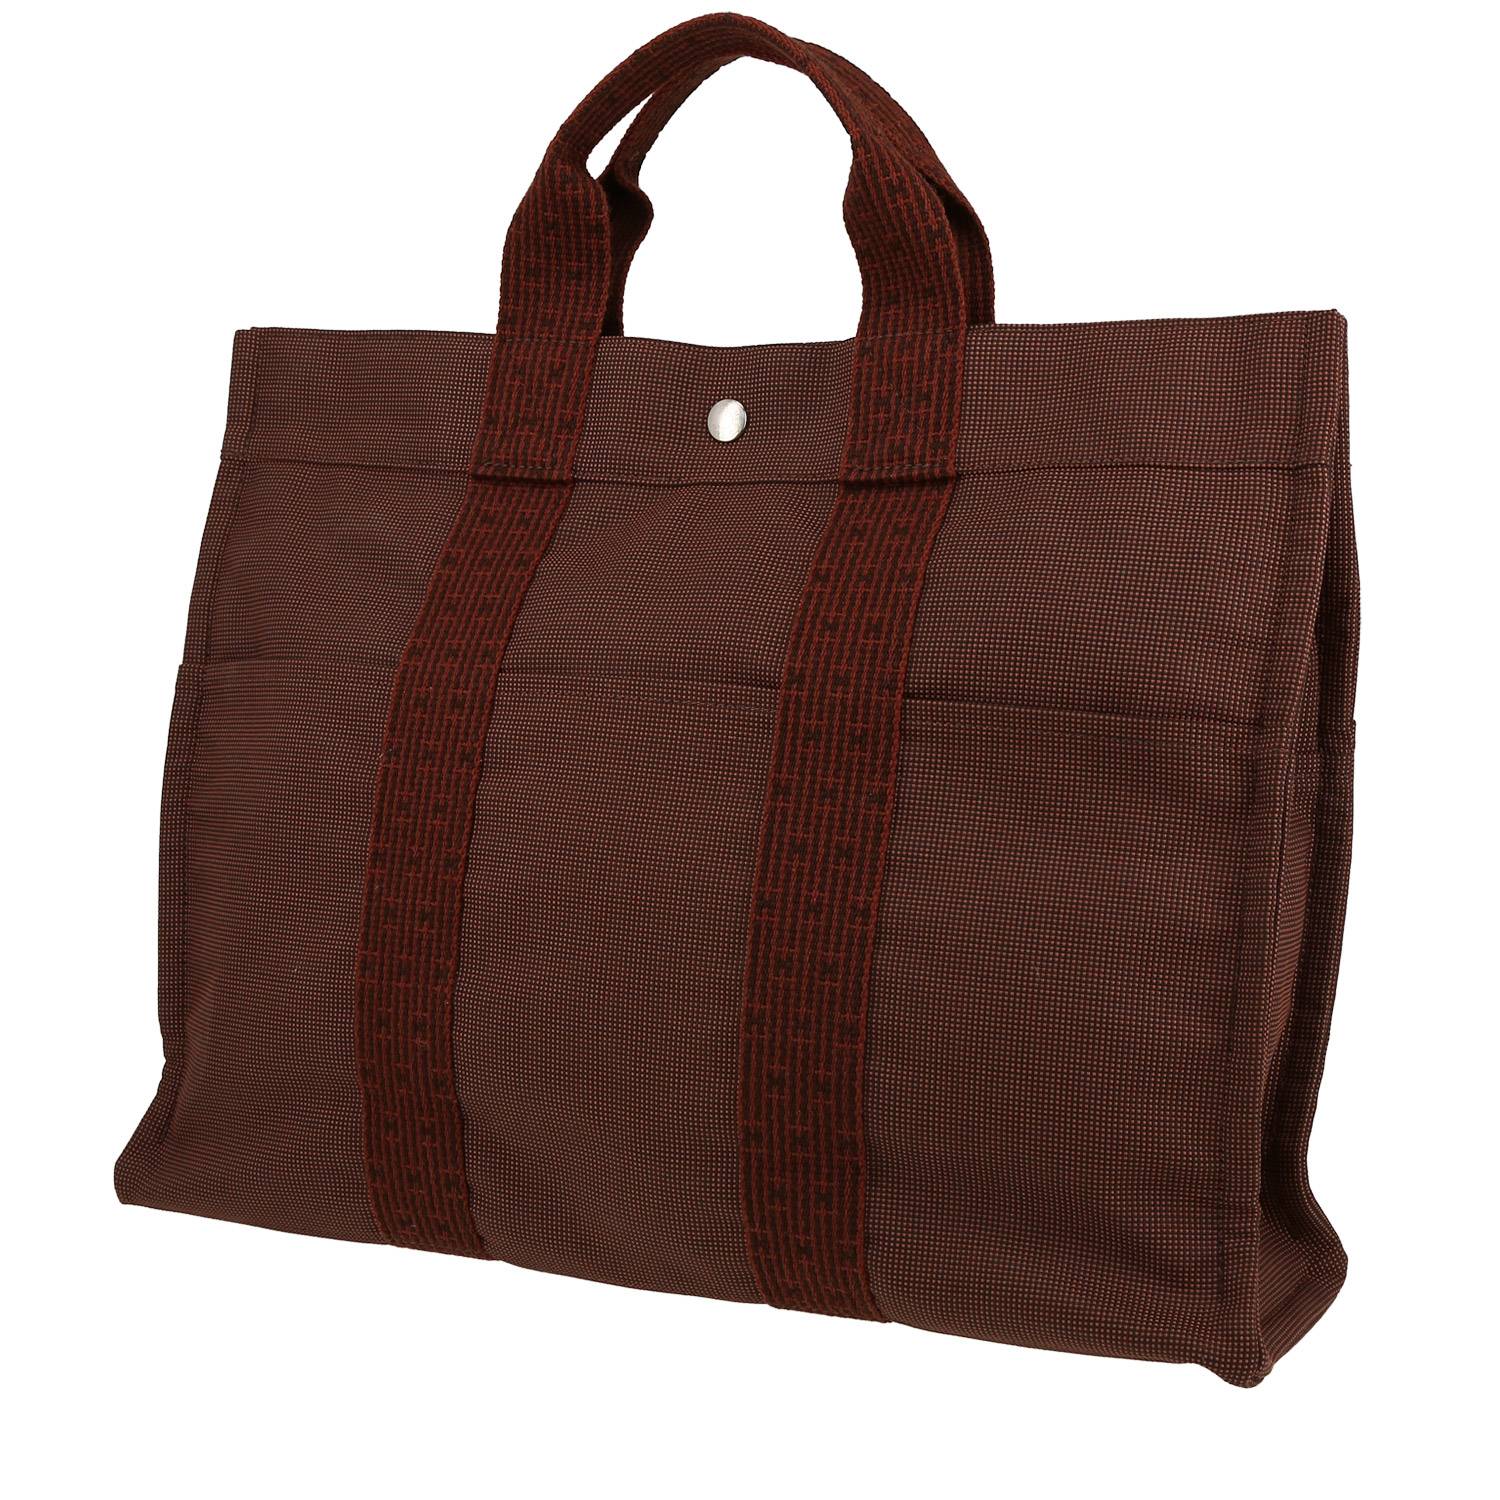 sac cabas hermès toto bag - shop bag en toile bordeaux et rouge